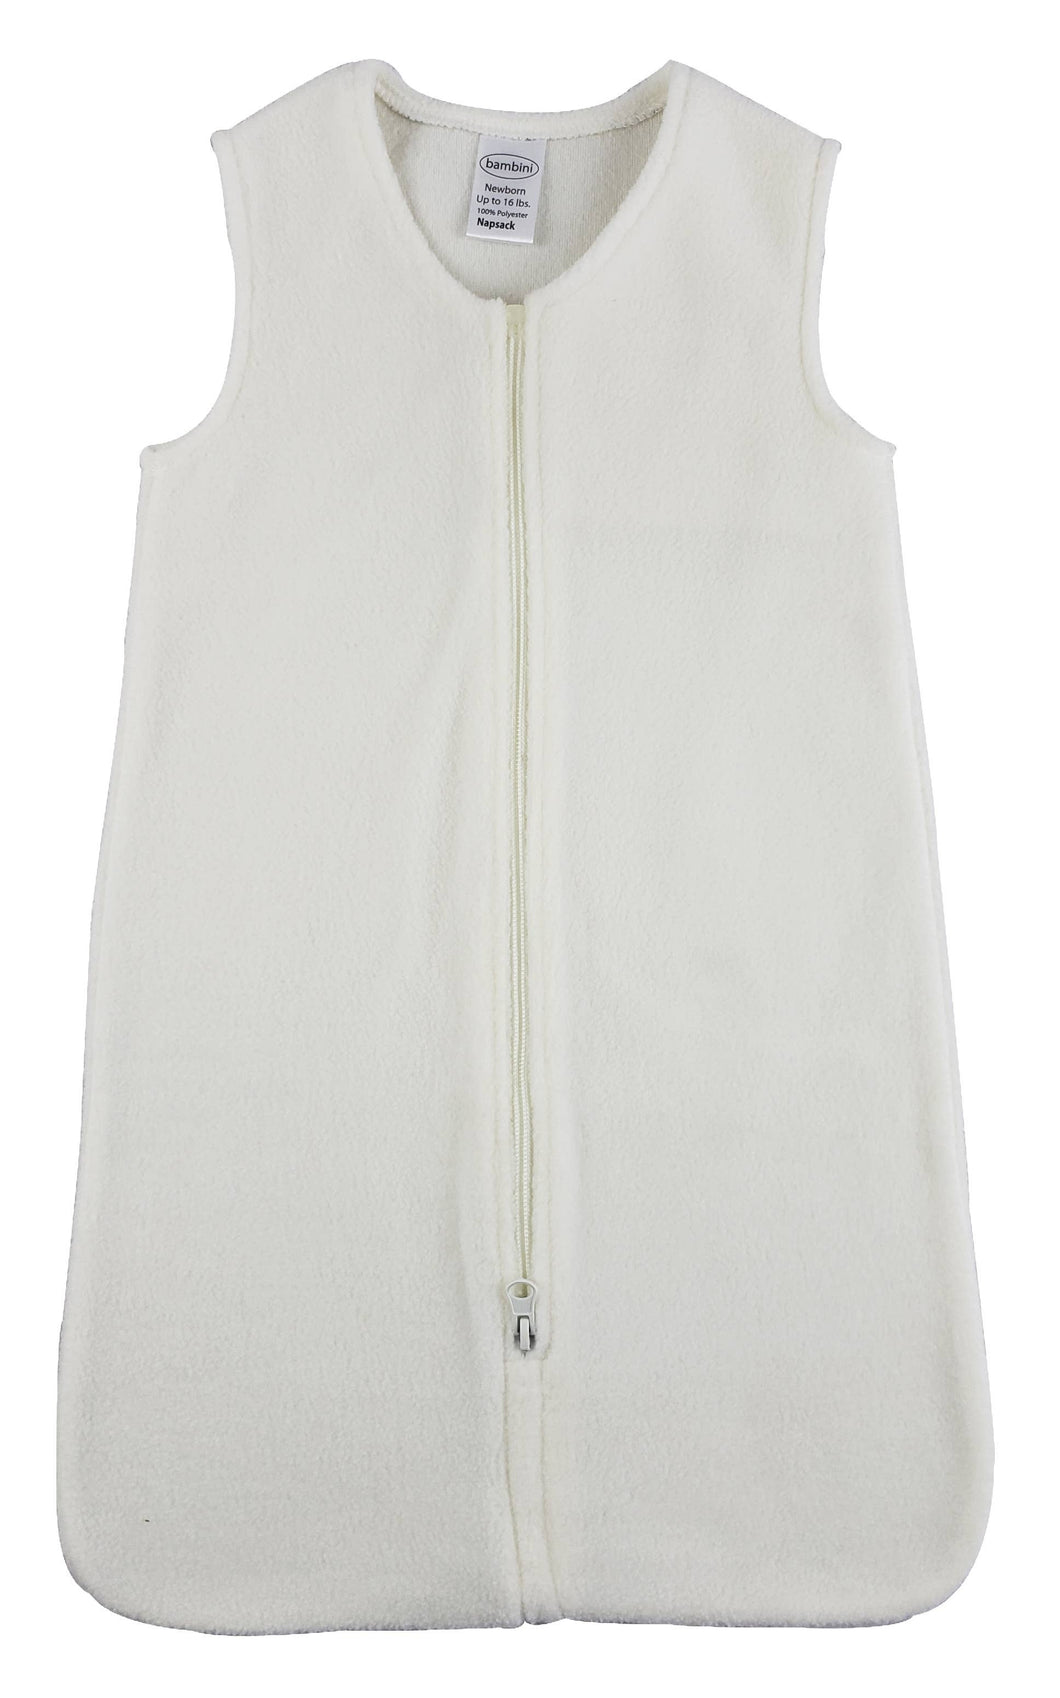 Cream Fleece Napsack Wearable Blanket - 916C